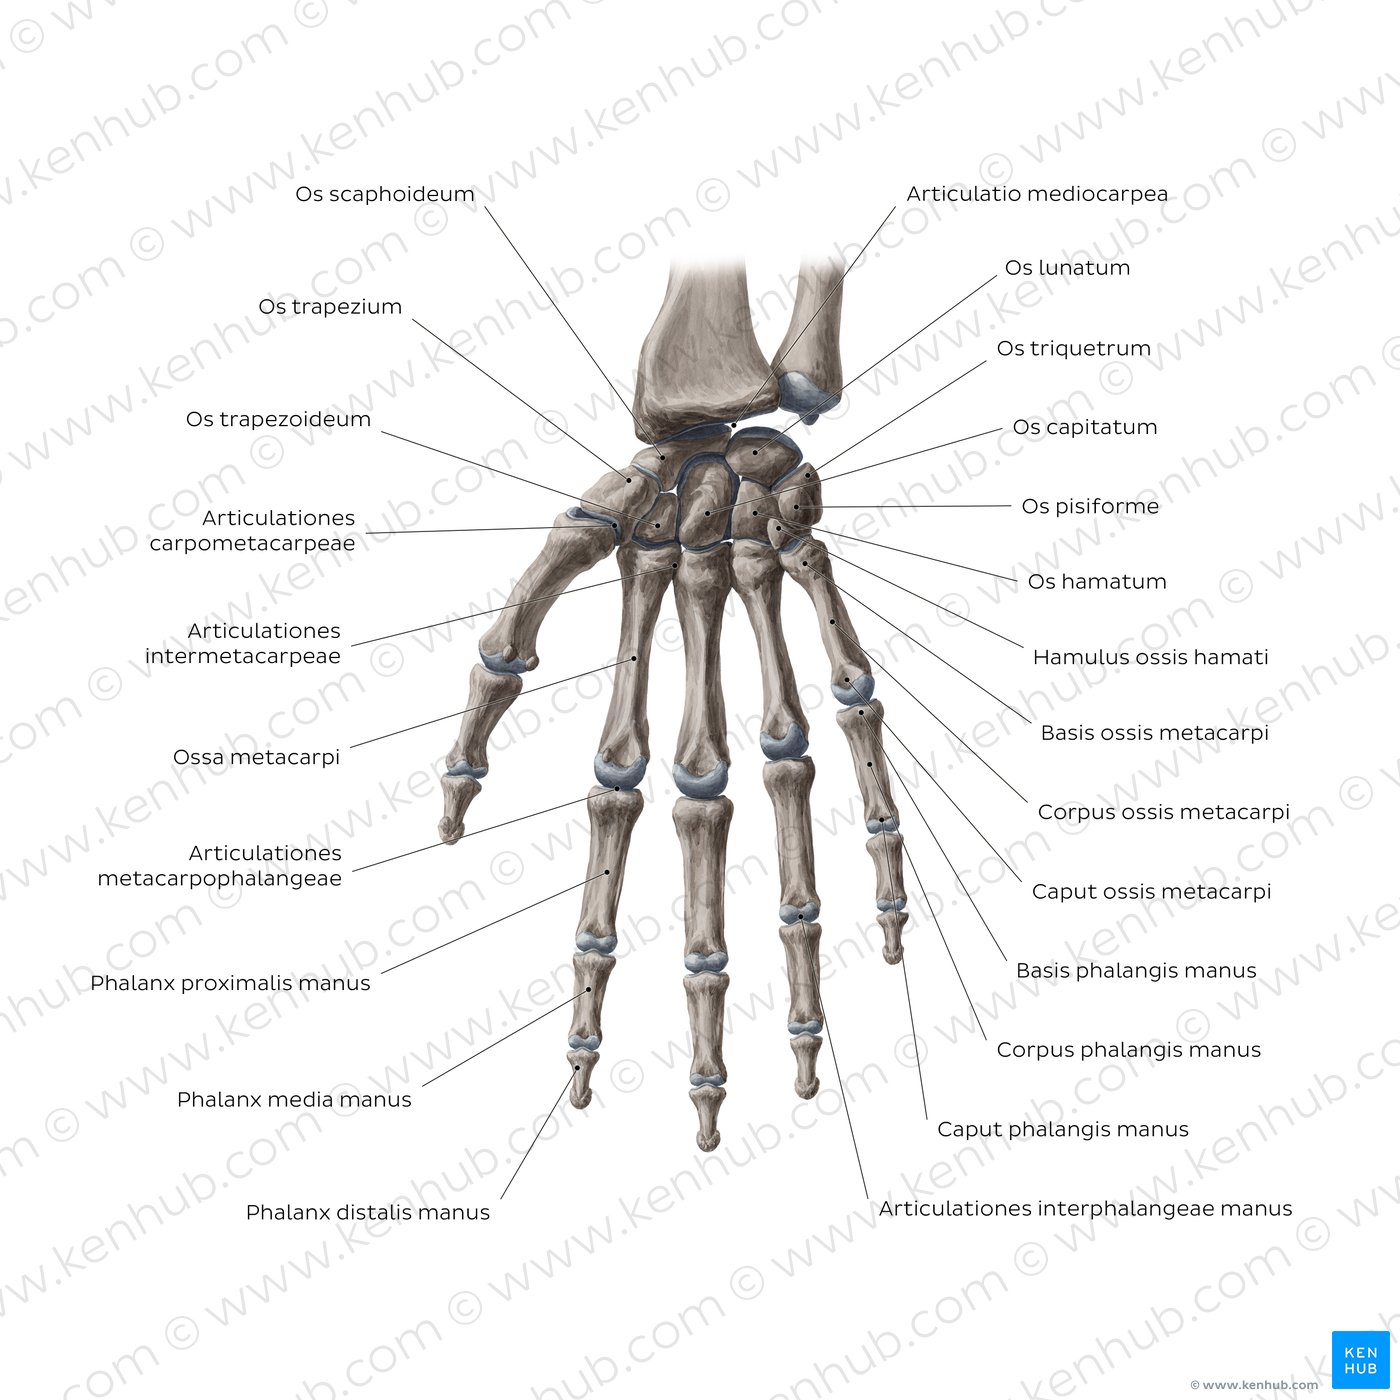 Knochen und Gelenke von Hand und Handgelenk